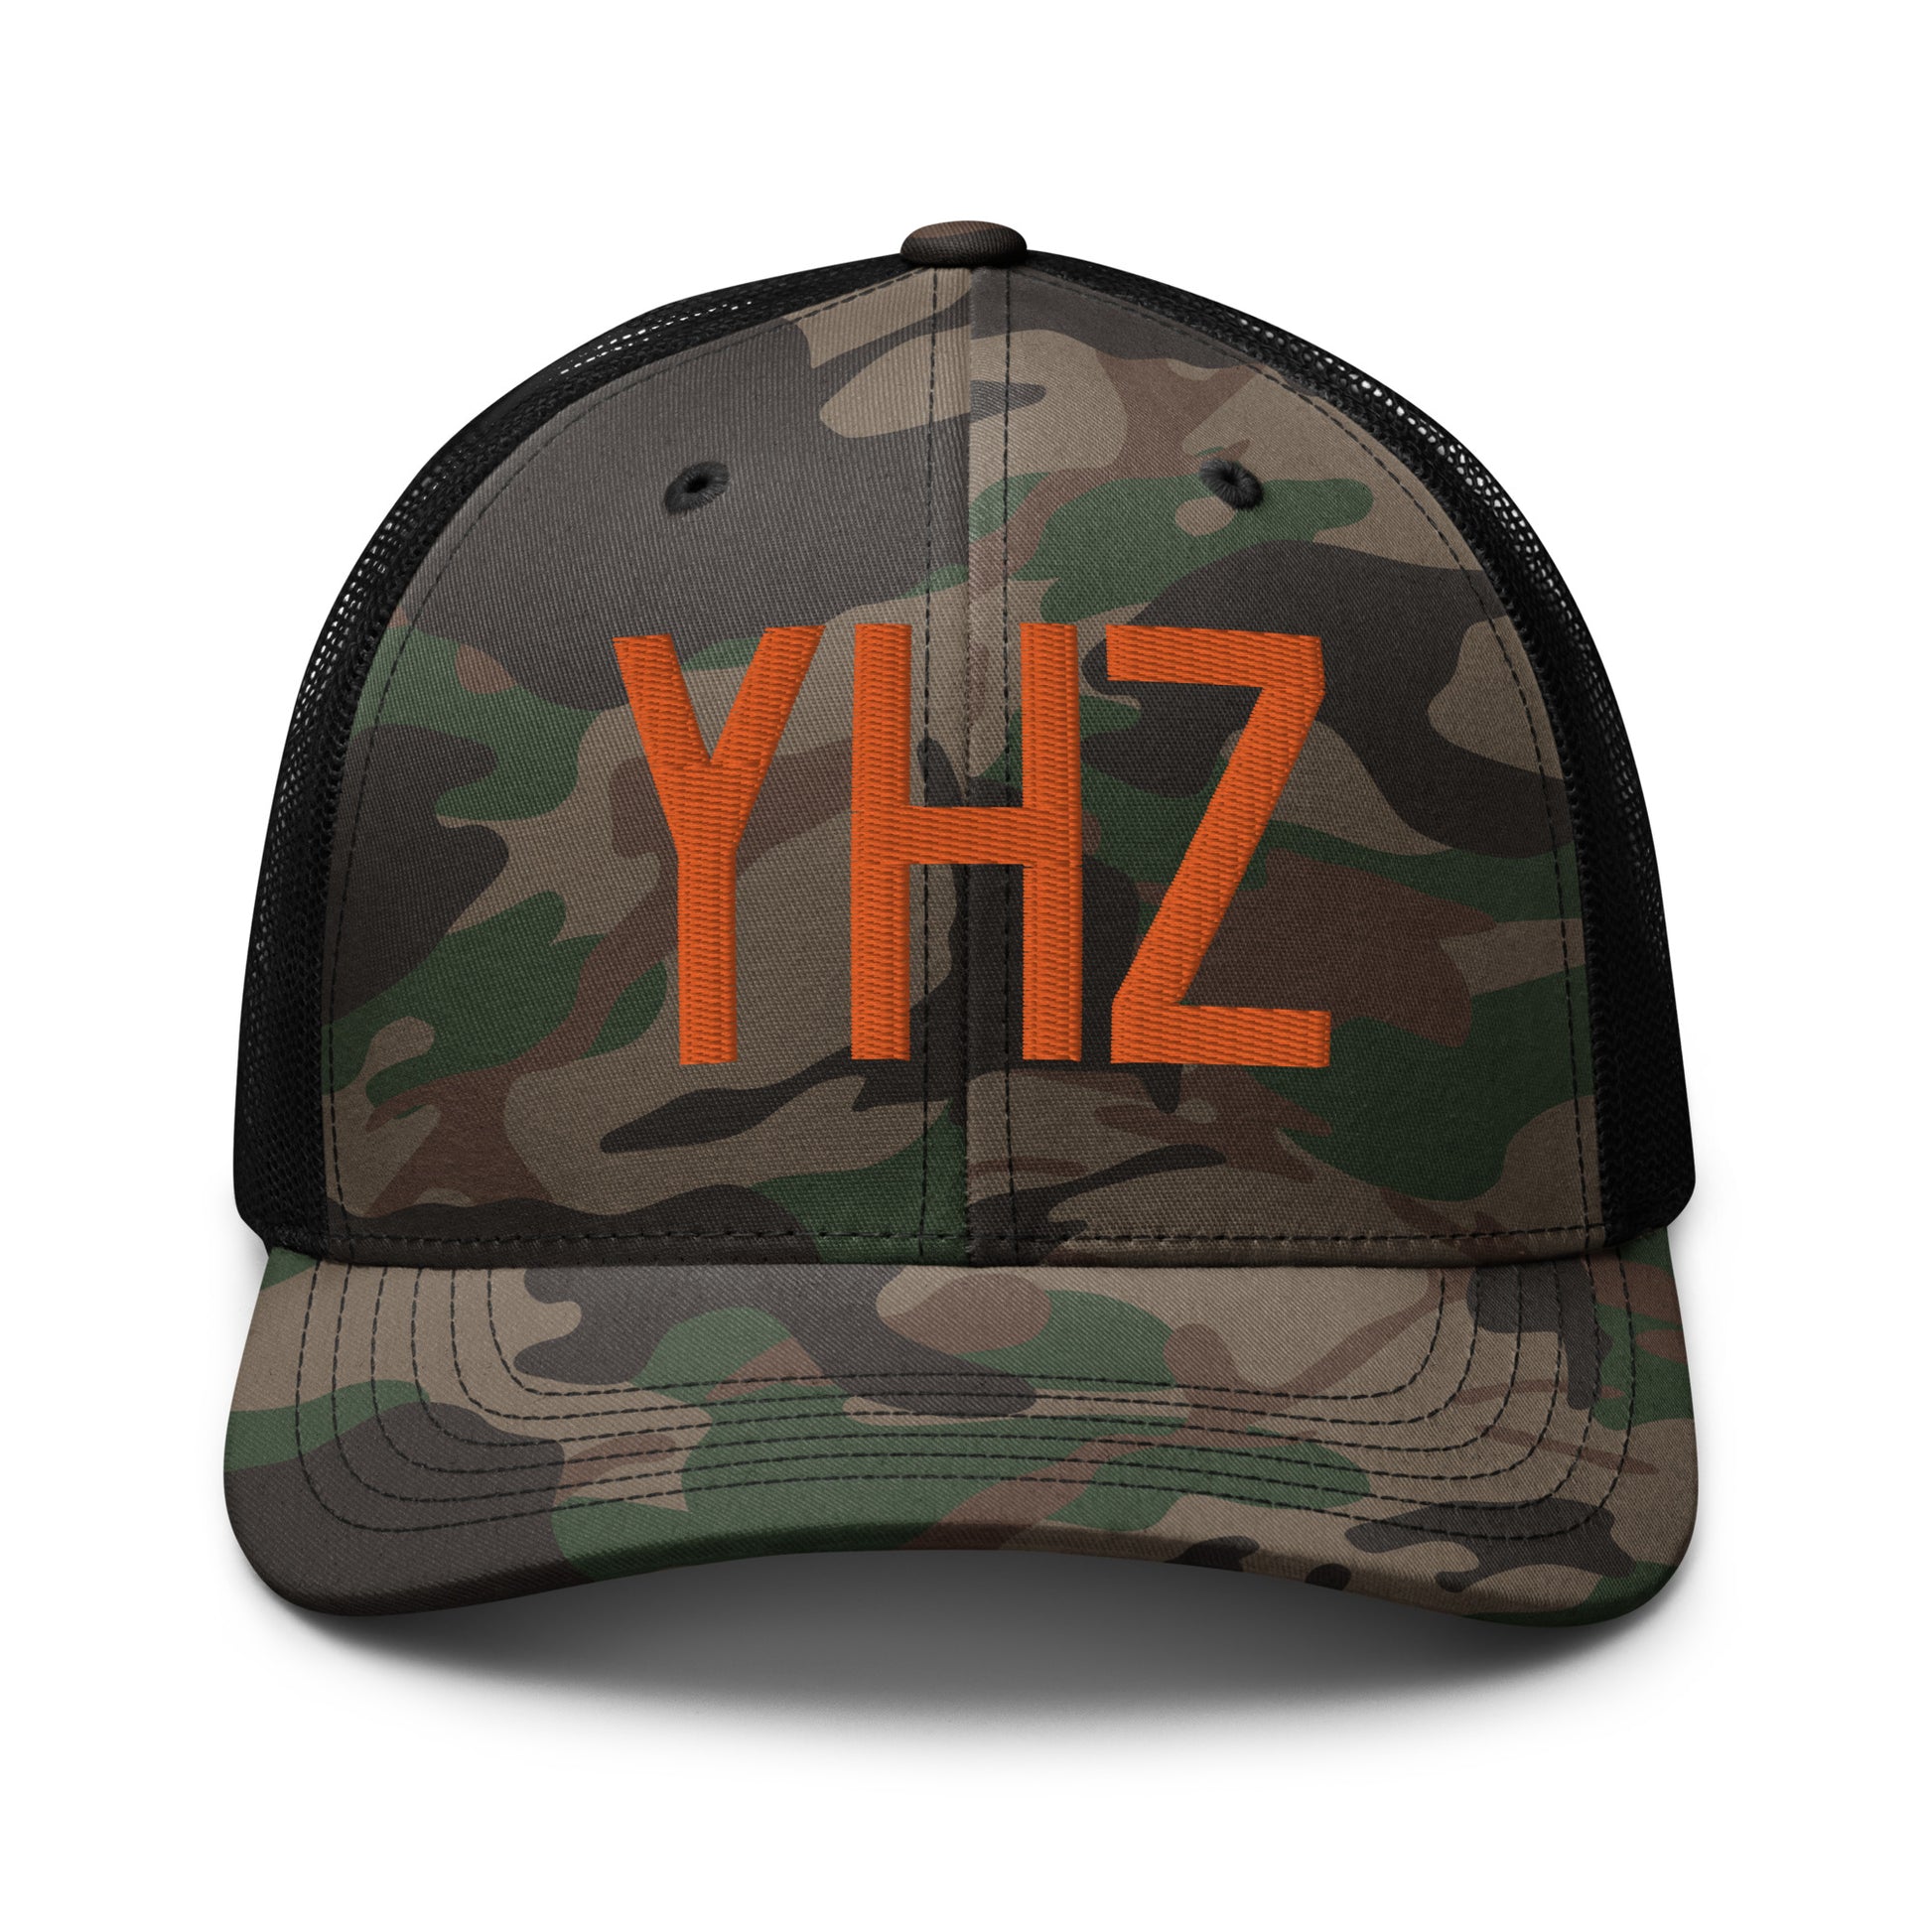 Airport Code Camouflage Trucker Hat - Orange • YHZ Halifax • YHM Designs - Image 10